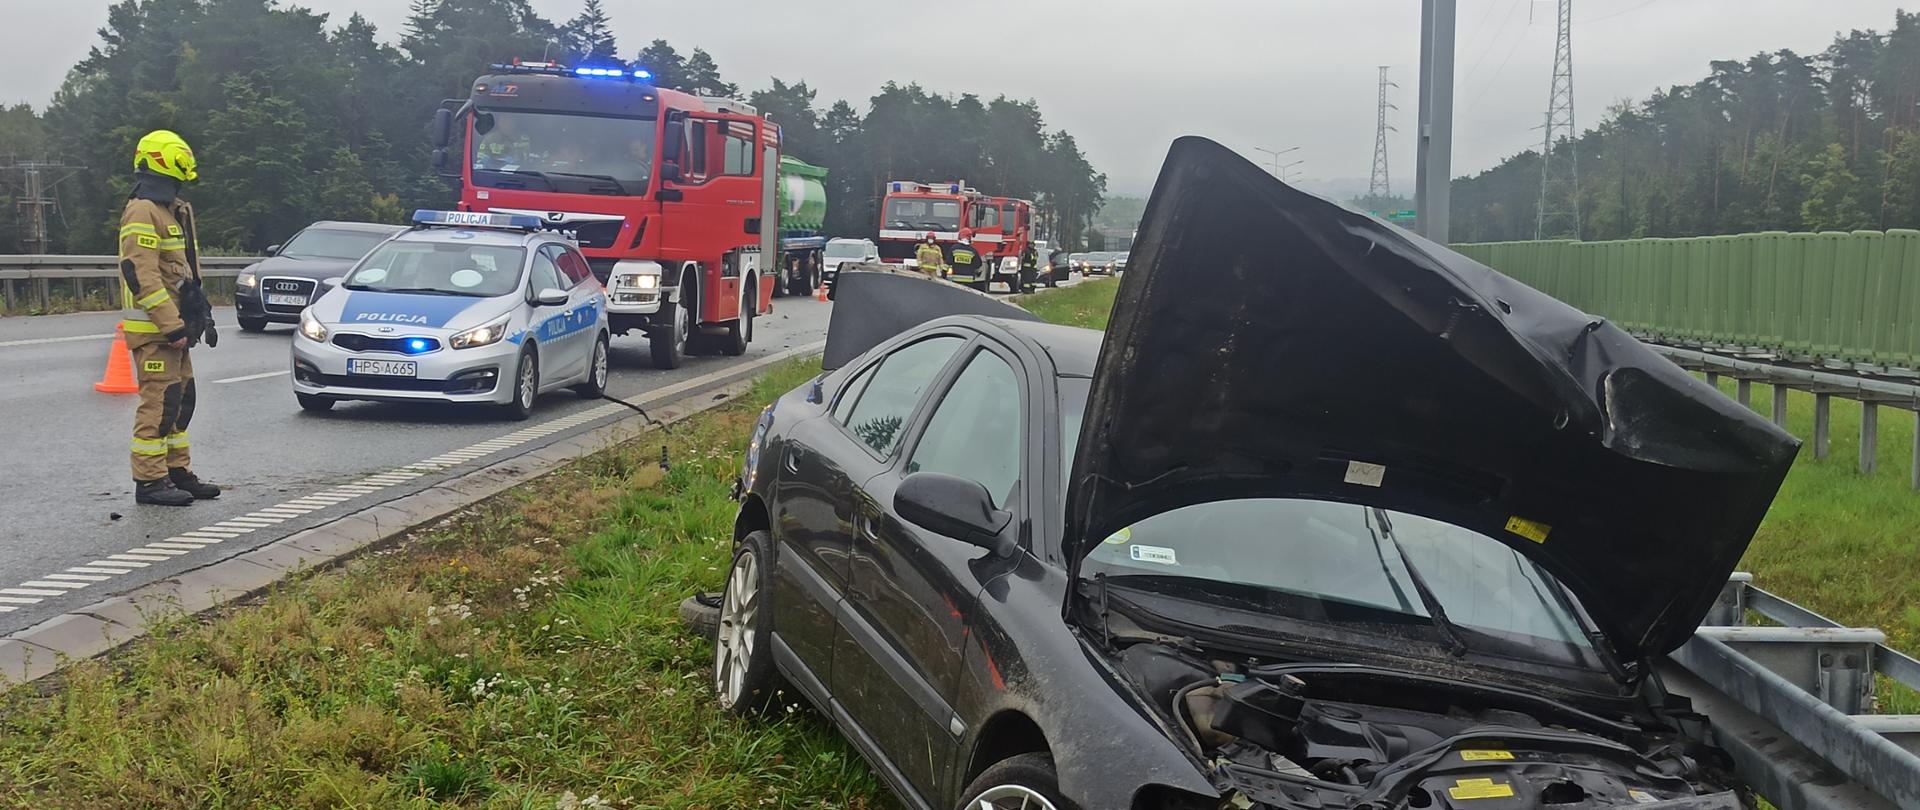 Zdjęcie przedstawia uszkodzony samochód marki Volvo S60 z kompletnie rozbitym przodem. Samochód stoi na poboczu - po lewej widać strażaka oraz samochody policji i straży pożarnej. Na jezdni jest mokro.